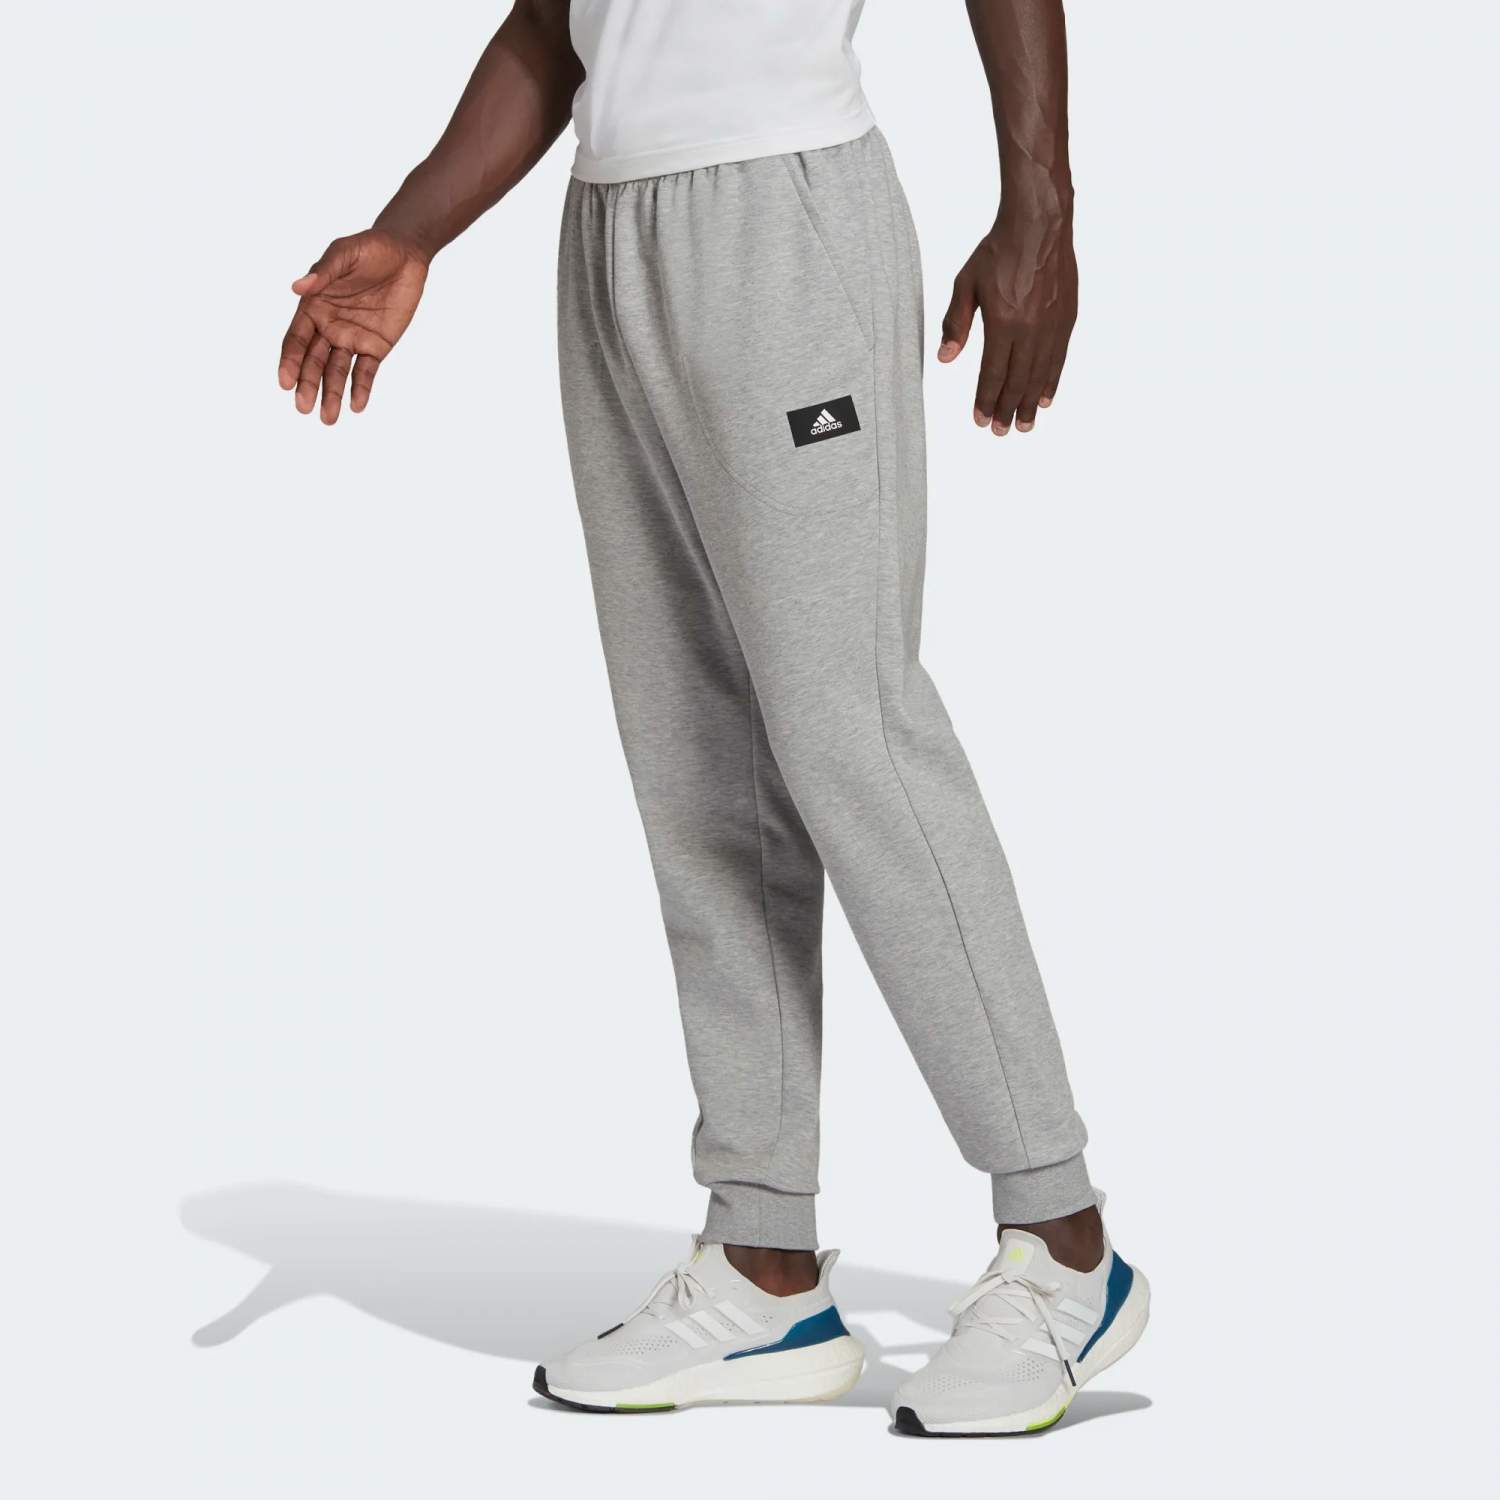 Спортивные брюки мужские Adidas M Fi Dblknt Pant серые XL - купить вМоскве, цены на Мегамаркет